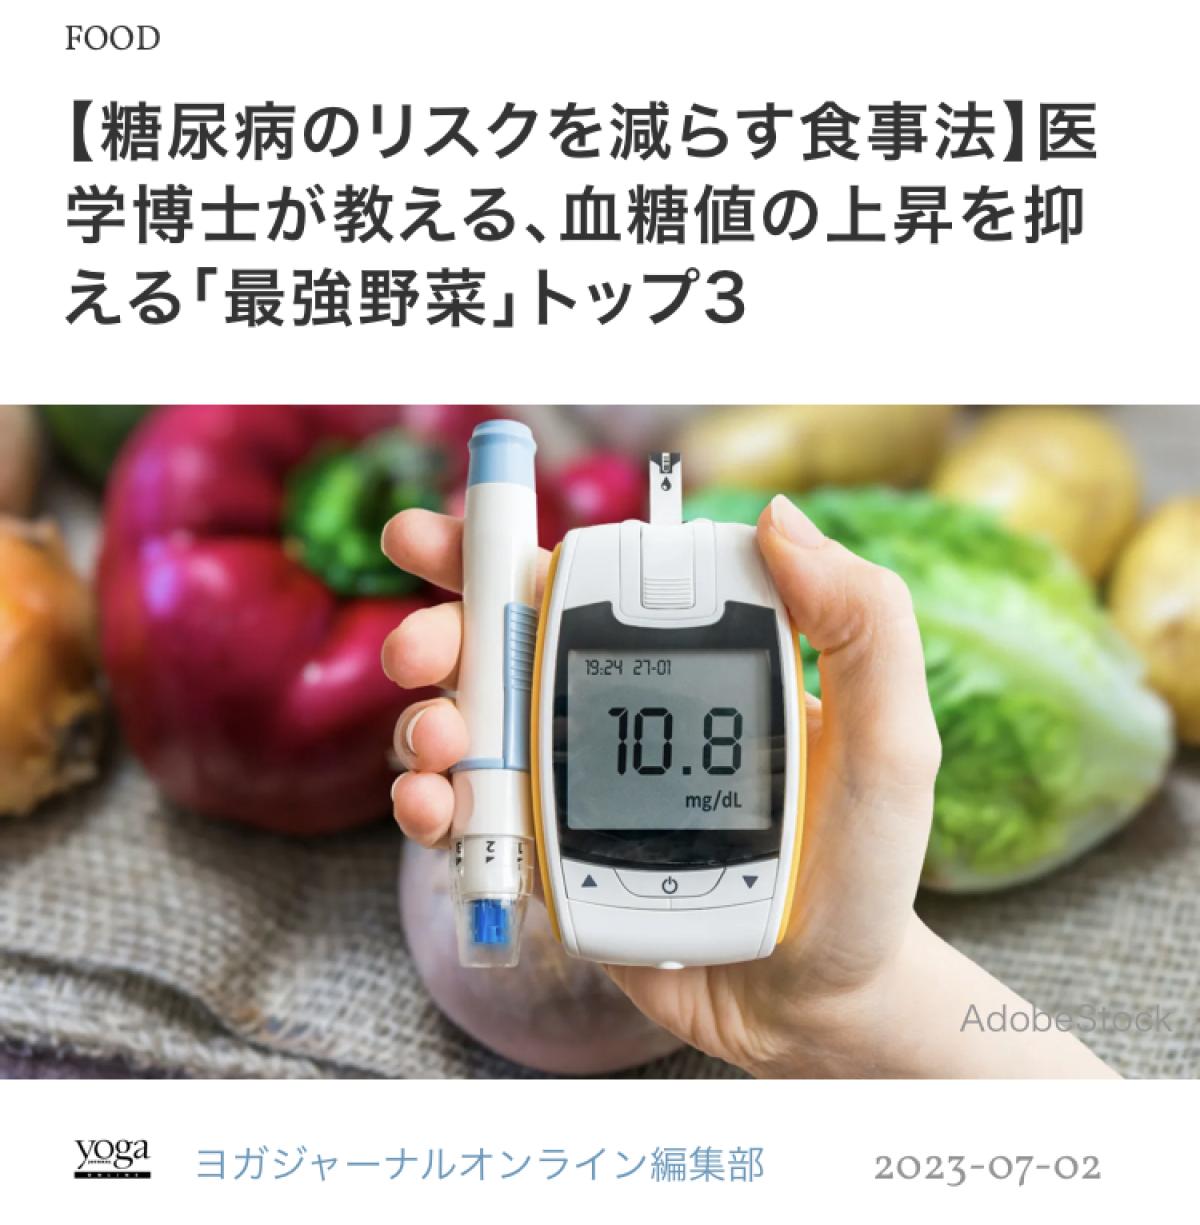 ヨガジャーナルオンラインにて日本 栄養 コンシェルジュ 協会 代表理事 岩崎 真宏 が監修した記事「【糖尿病のリスクを減らす食事法】医学博士が教える、血糖値の上昇を抑える「最強野菜」トップ3」が掲載されました！